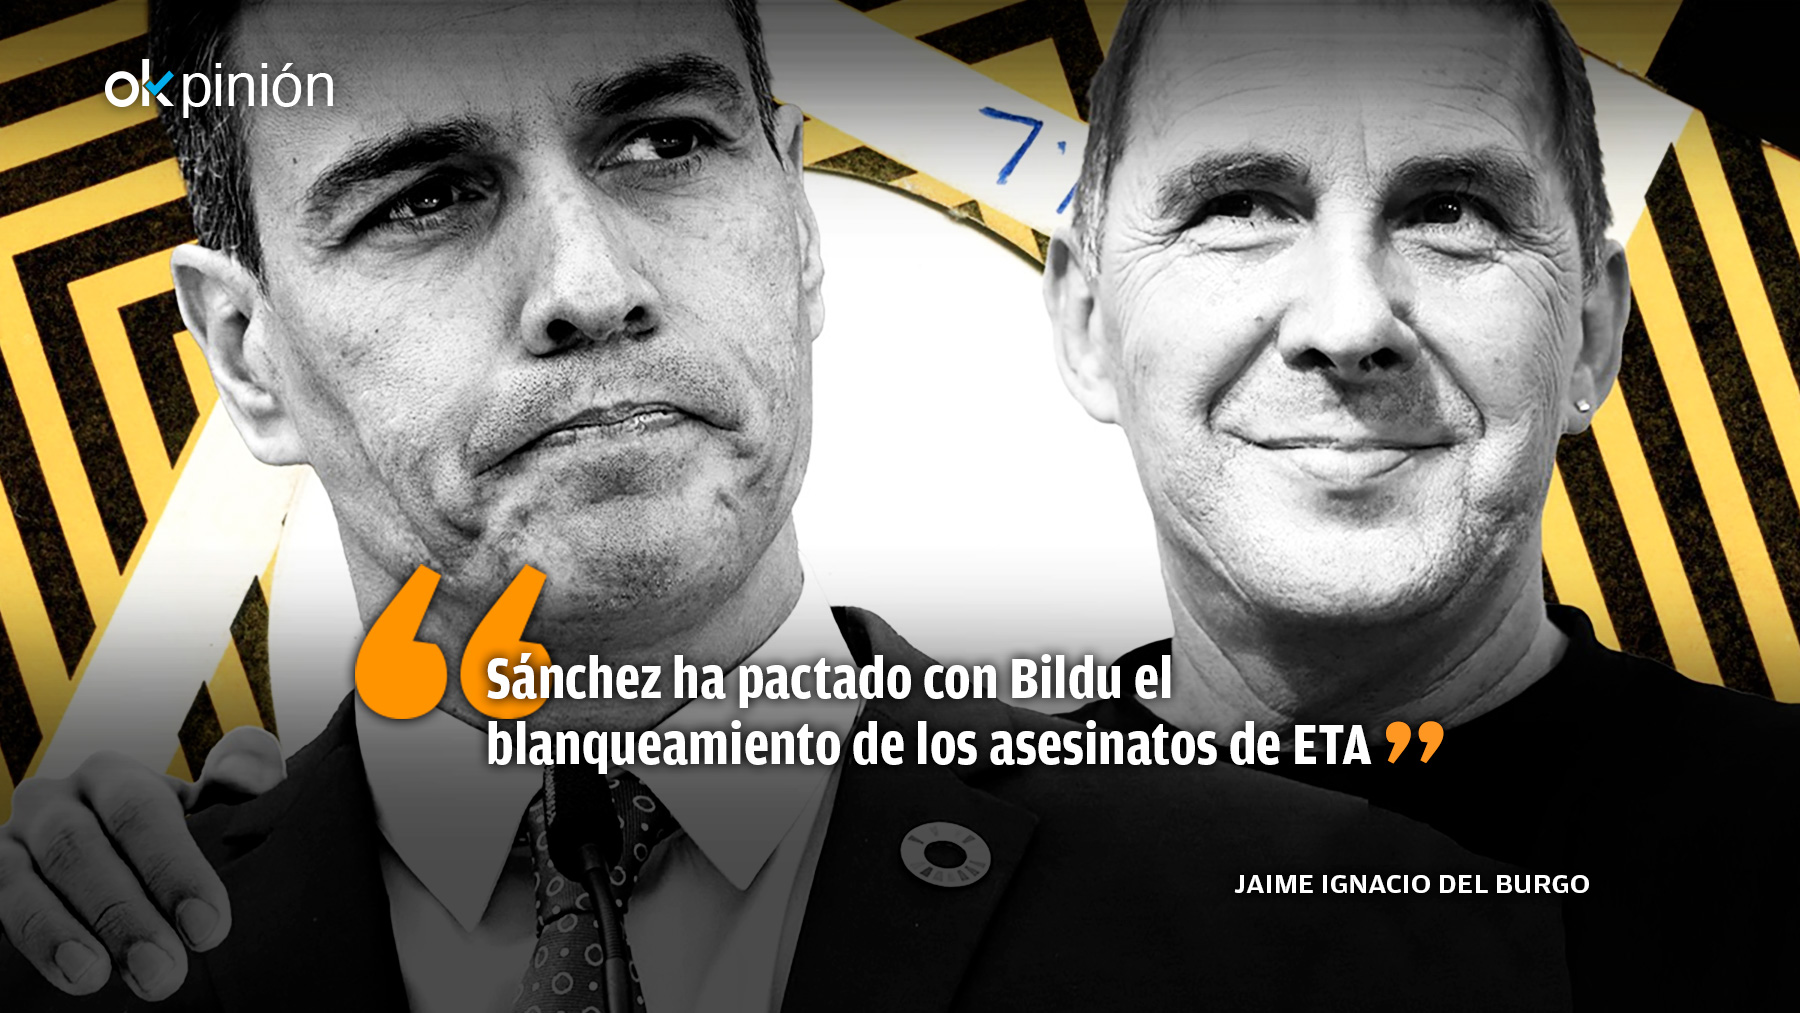 Sánchez pacta con Bildu la deslegitimación democrática del PSOE